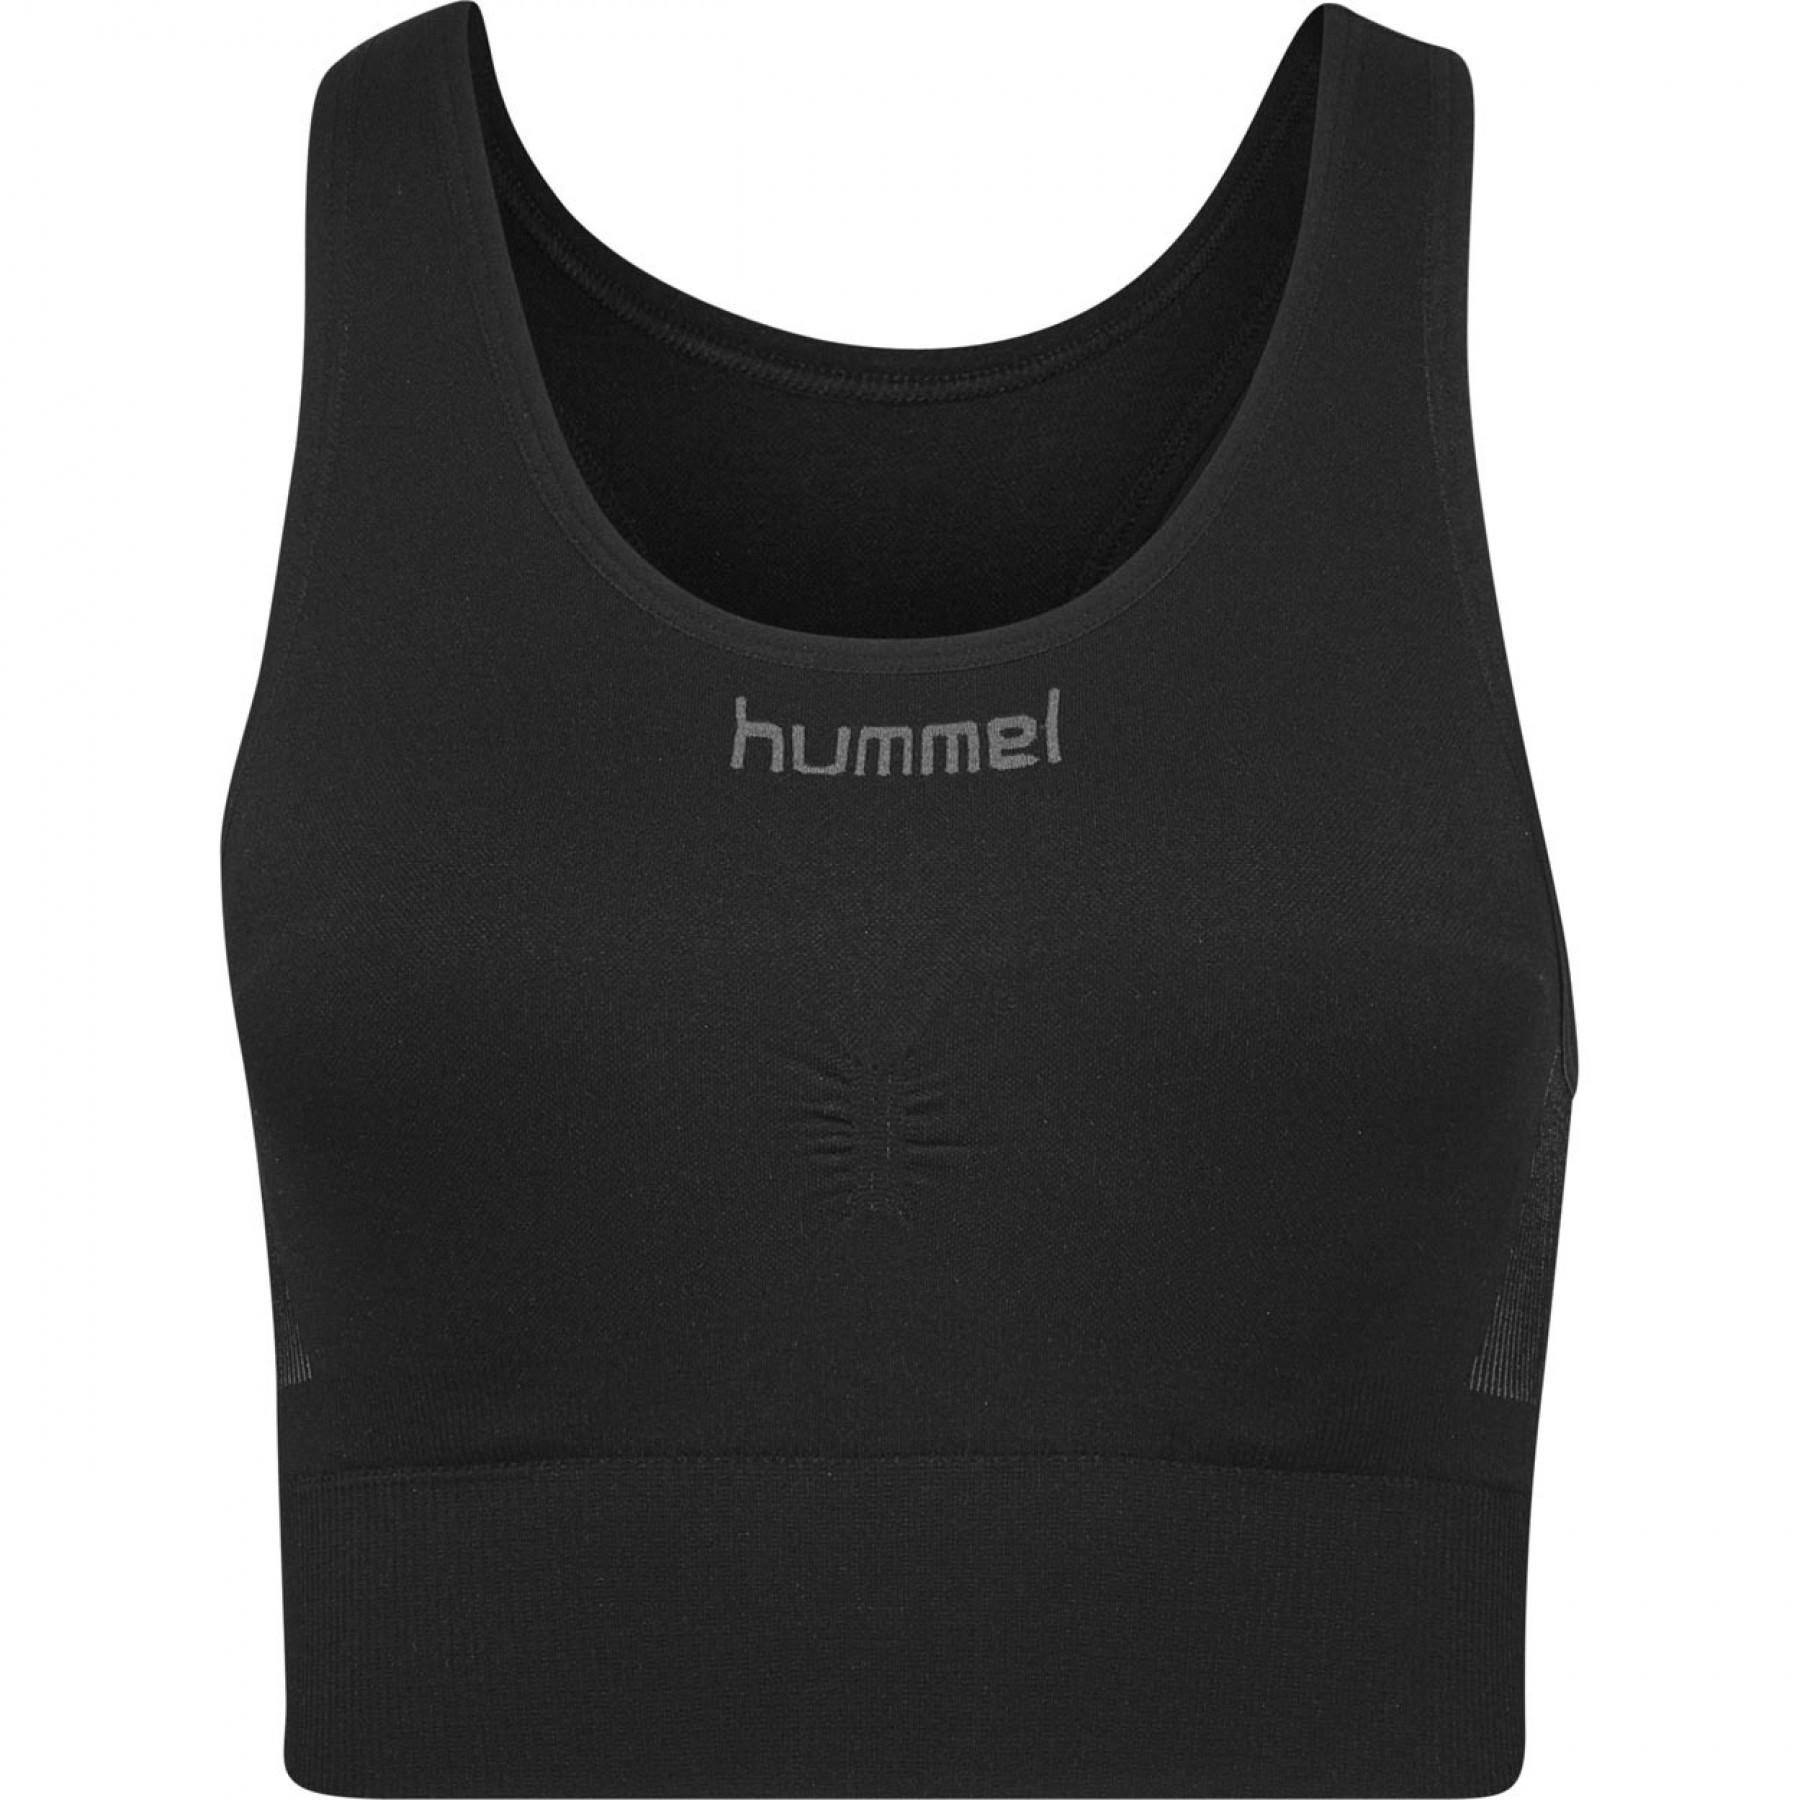 Women's bra Hummel Seamless